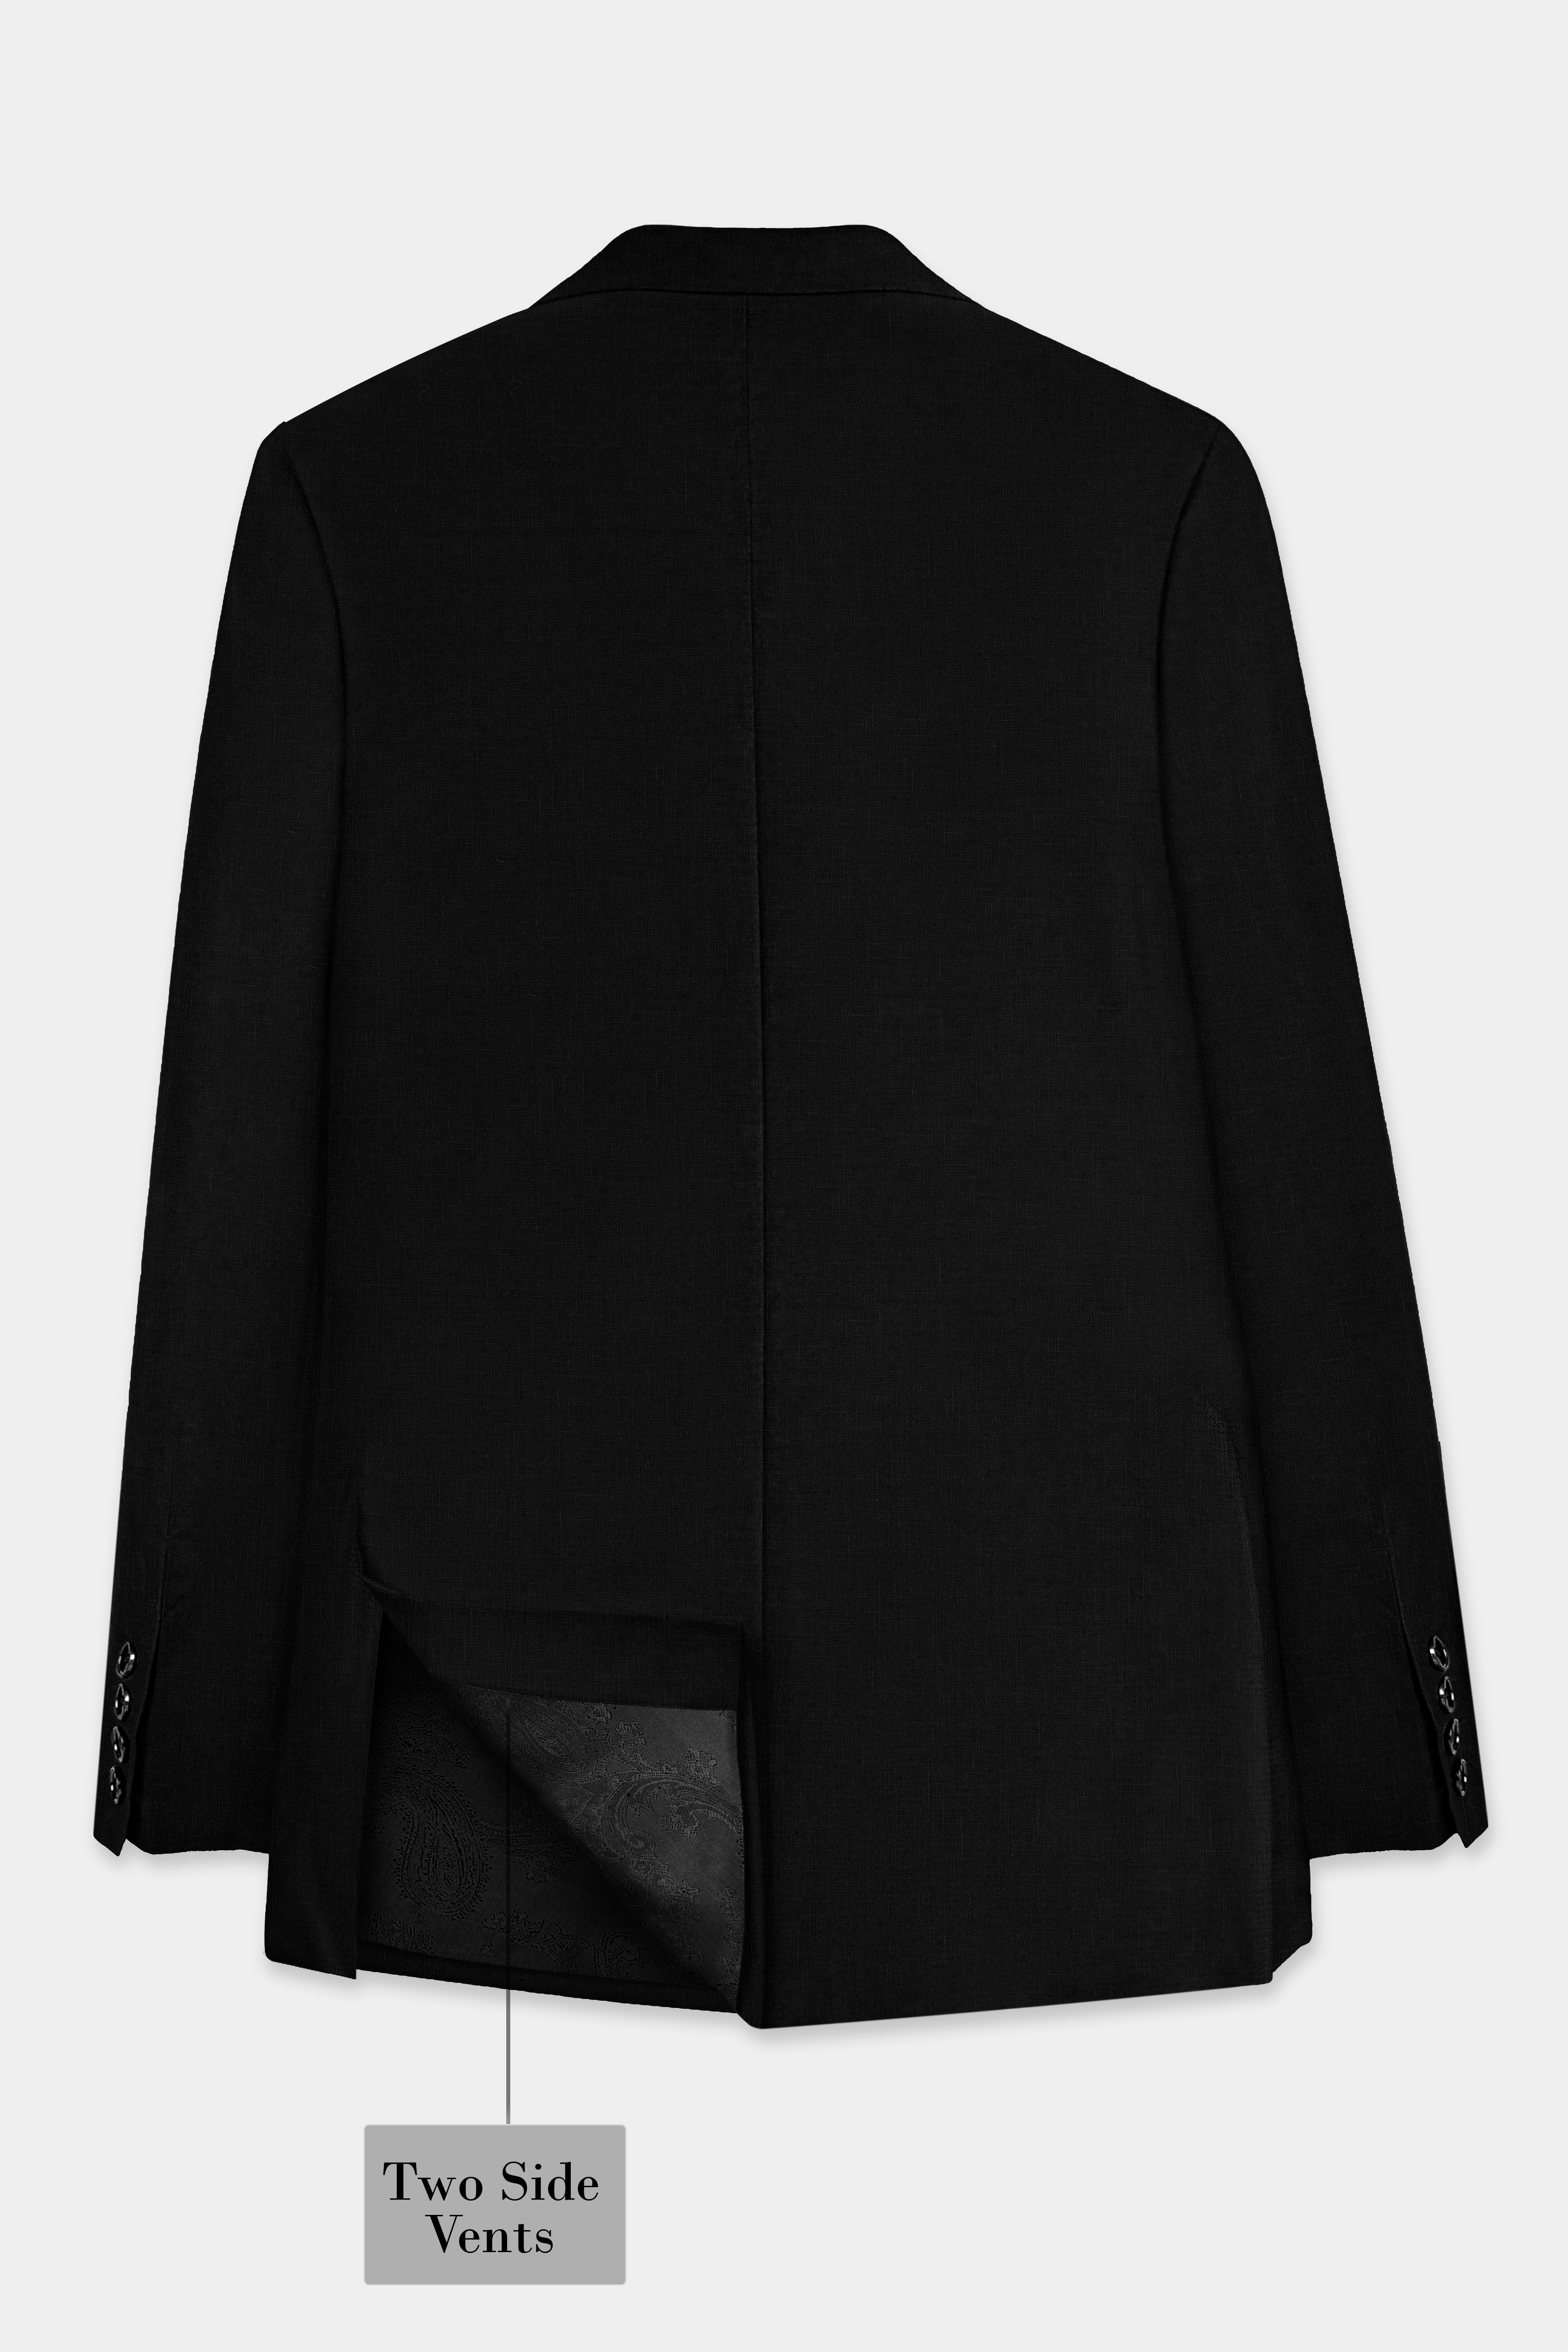 Jade Black Solid Double Breasted Tweed Blazer